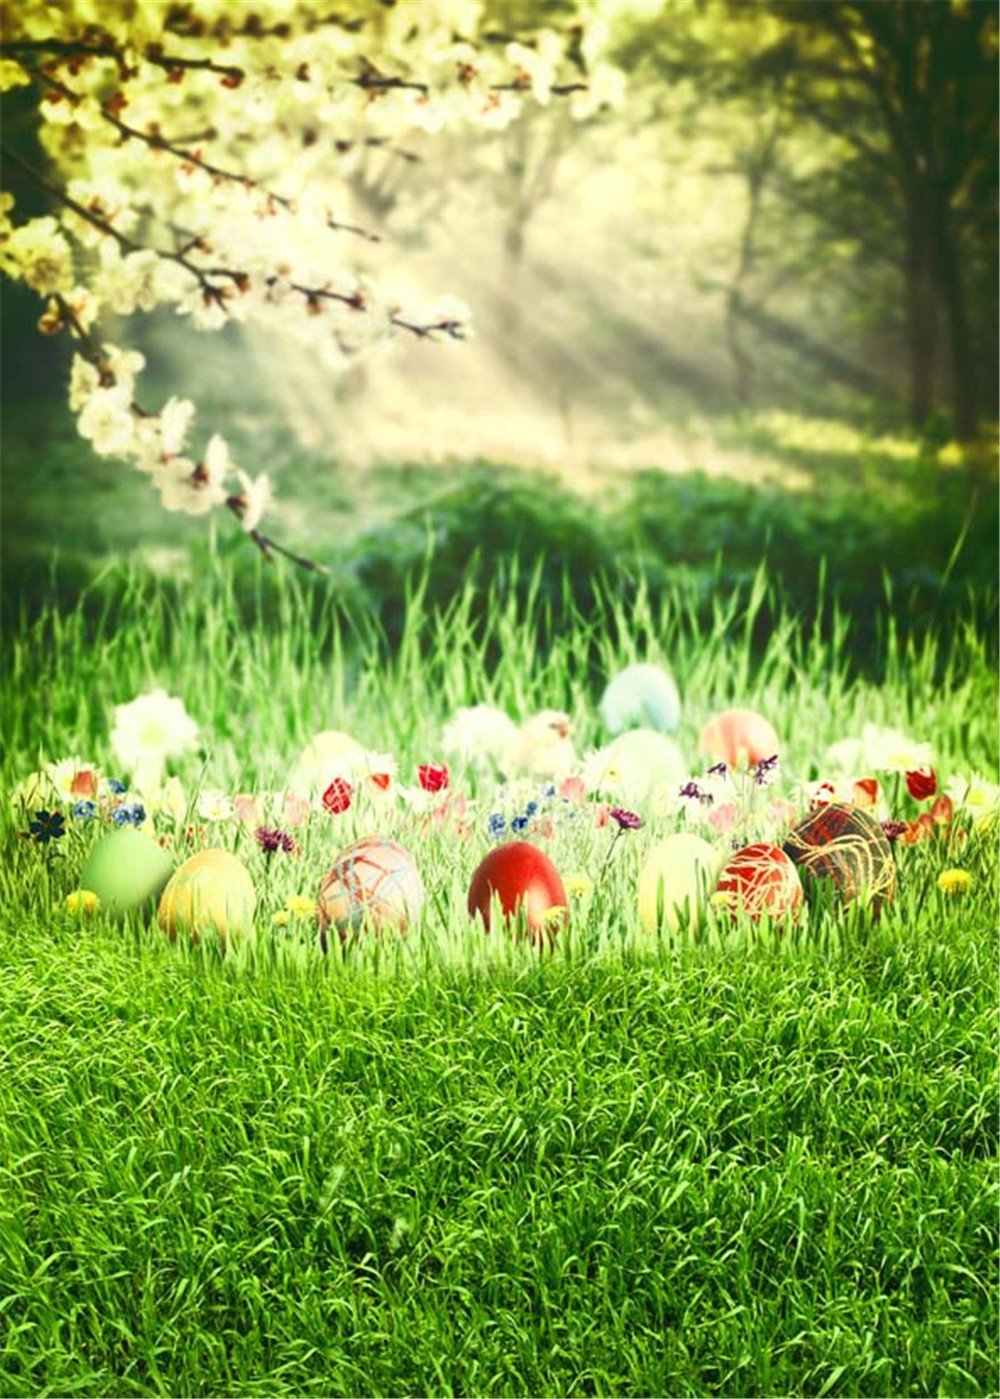 Sonnenschein durch Wald Bokeh Fotografie Hintergründe Frühling gedruckt Birne Blumen grünes Gras Ostereier Baby Neugeborene Fotoshooting Hintergrund